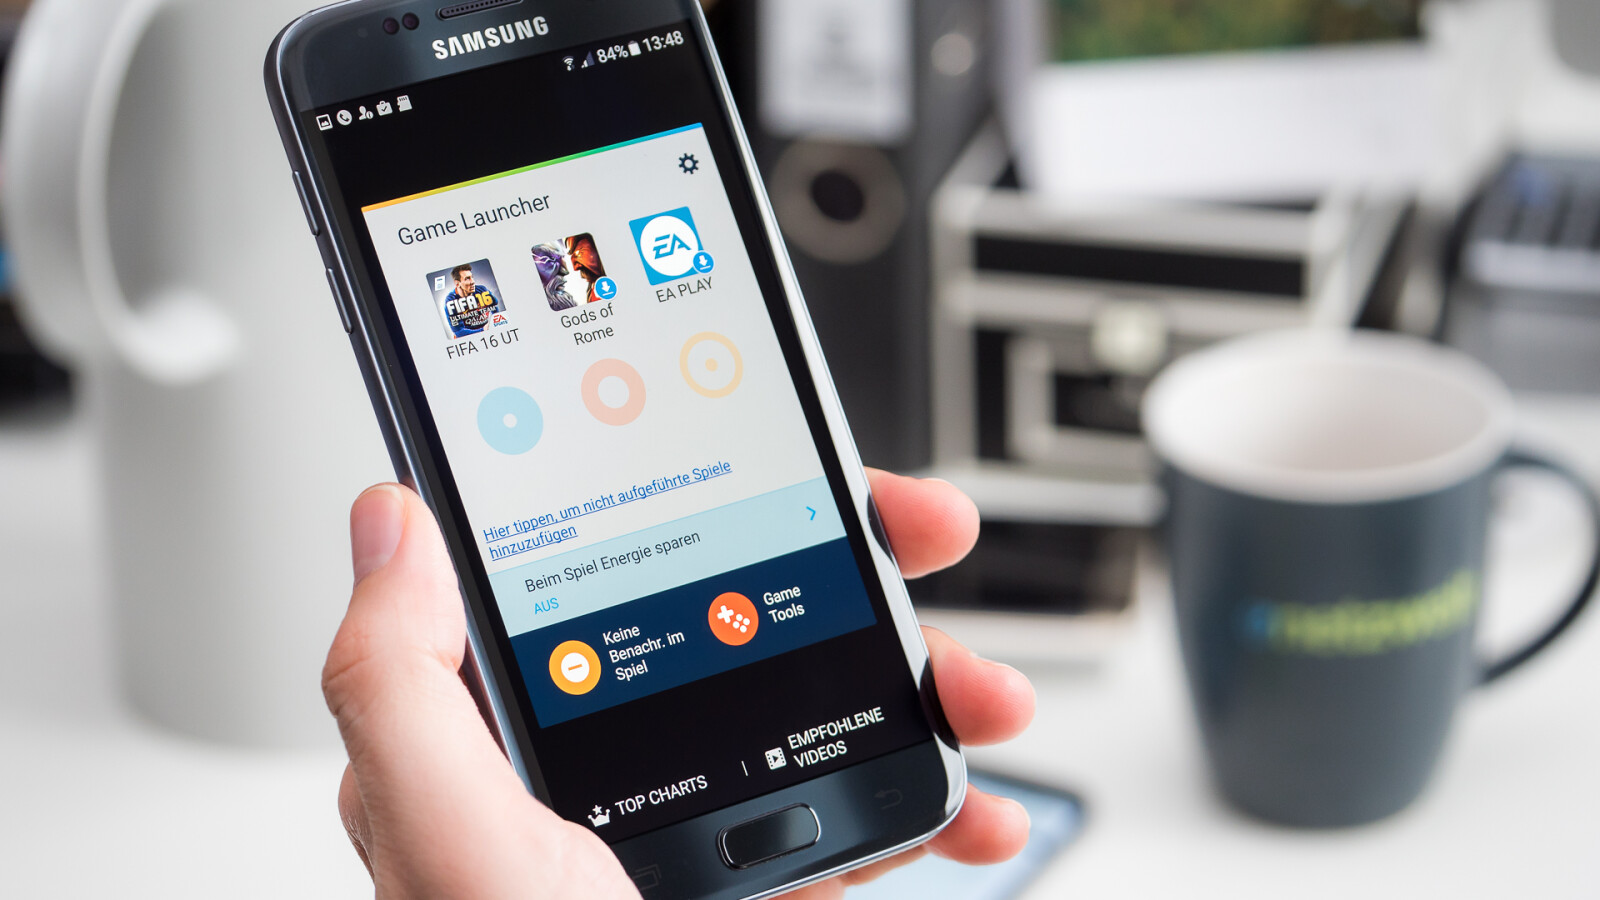 Galaxy S7 Für 199 Euro Telekom Verkauft Samsung Handy